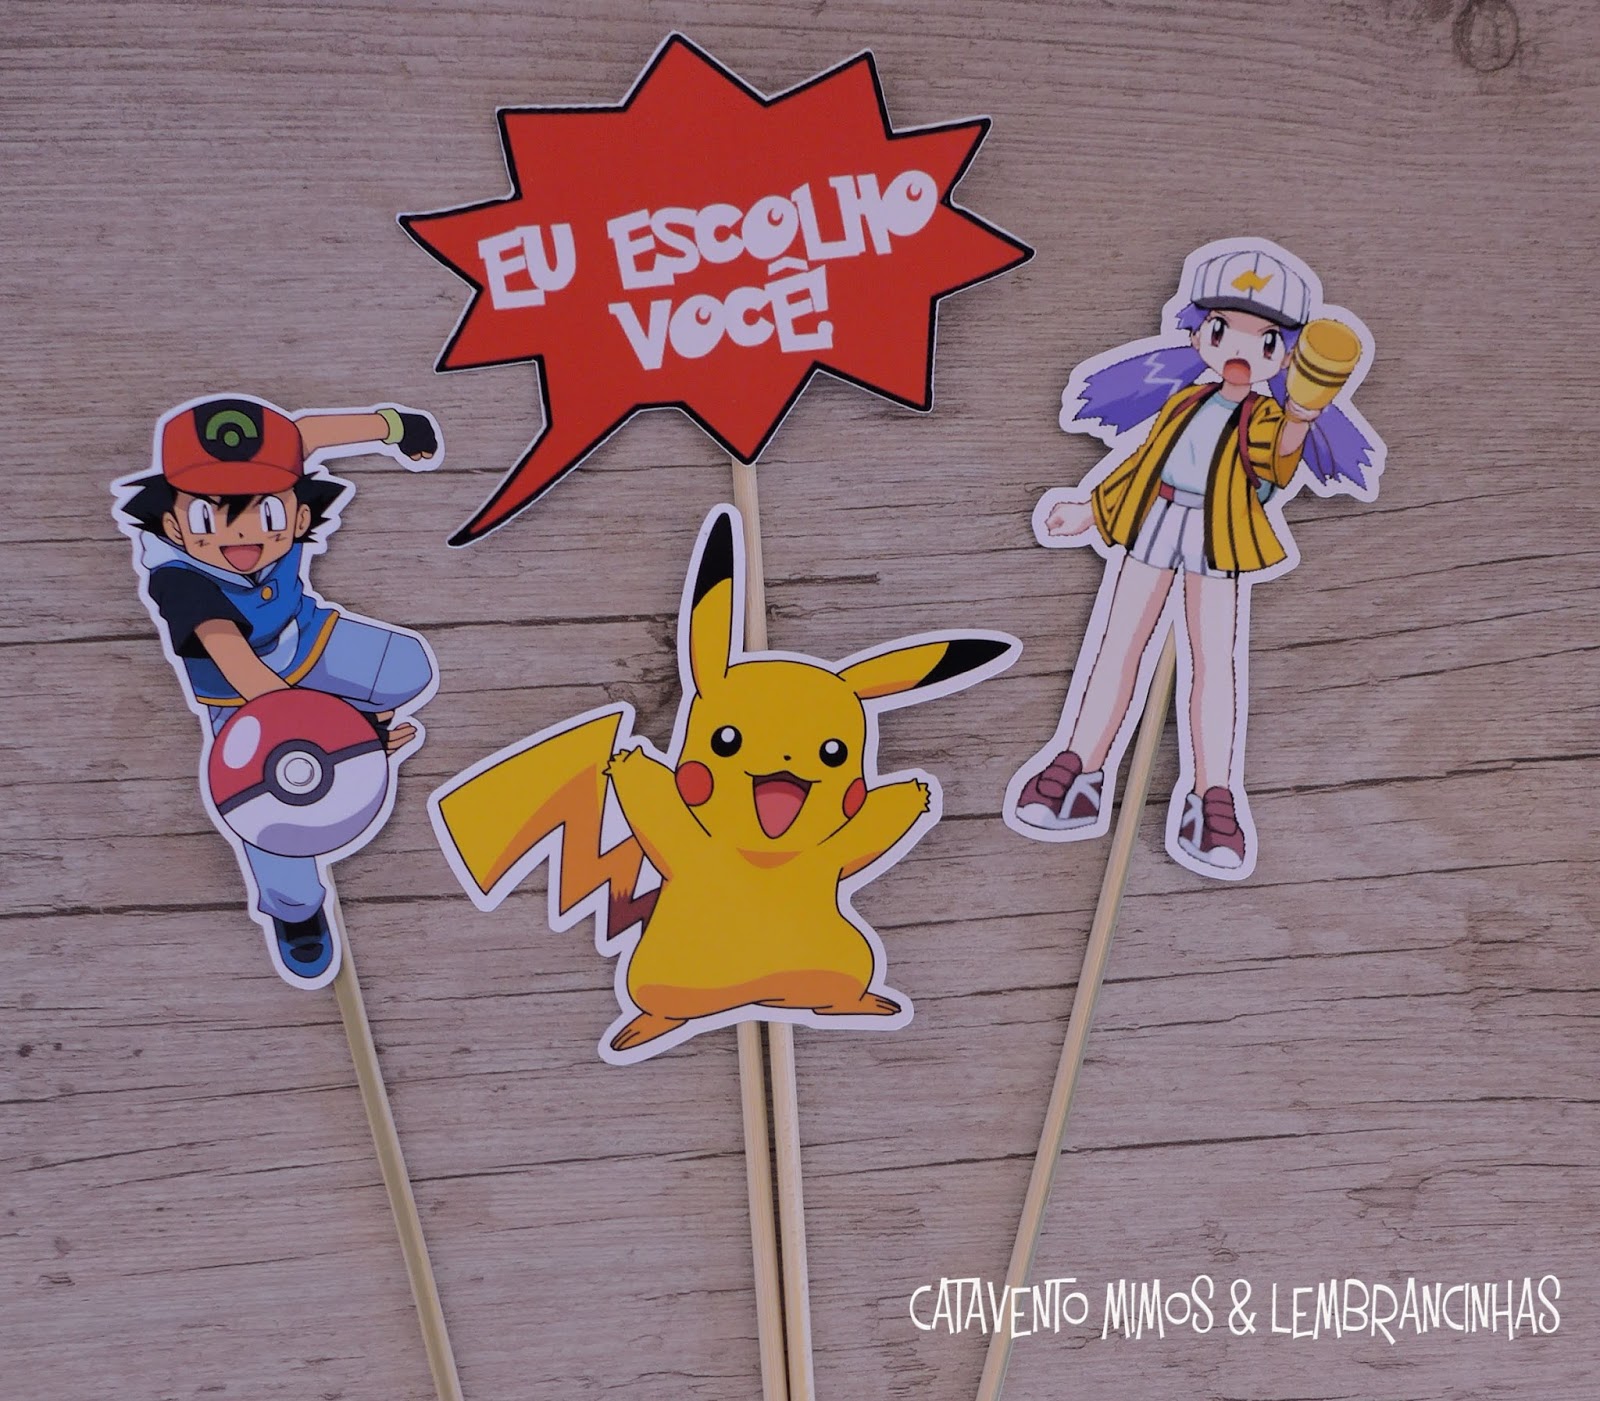 Uma graça o convite em forma de carta pokemon com o Pikachu para a